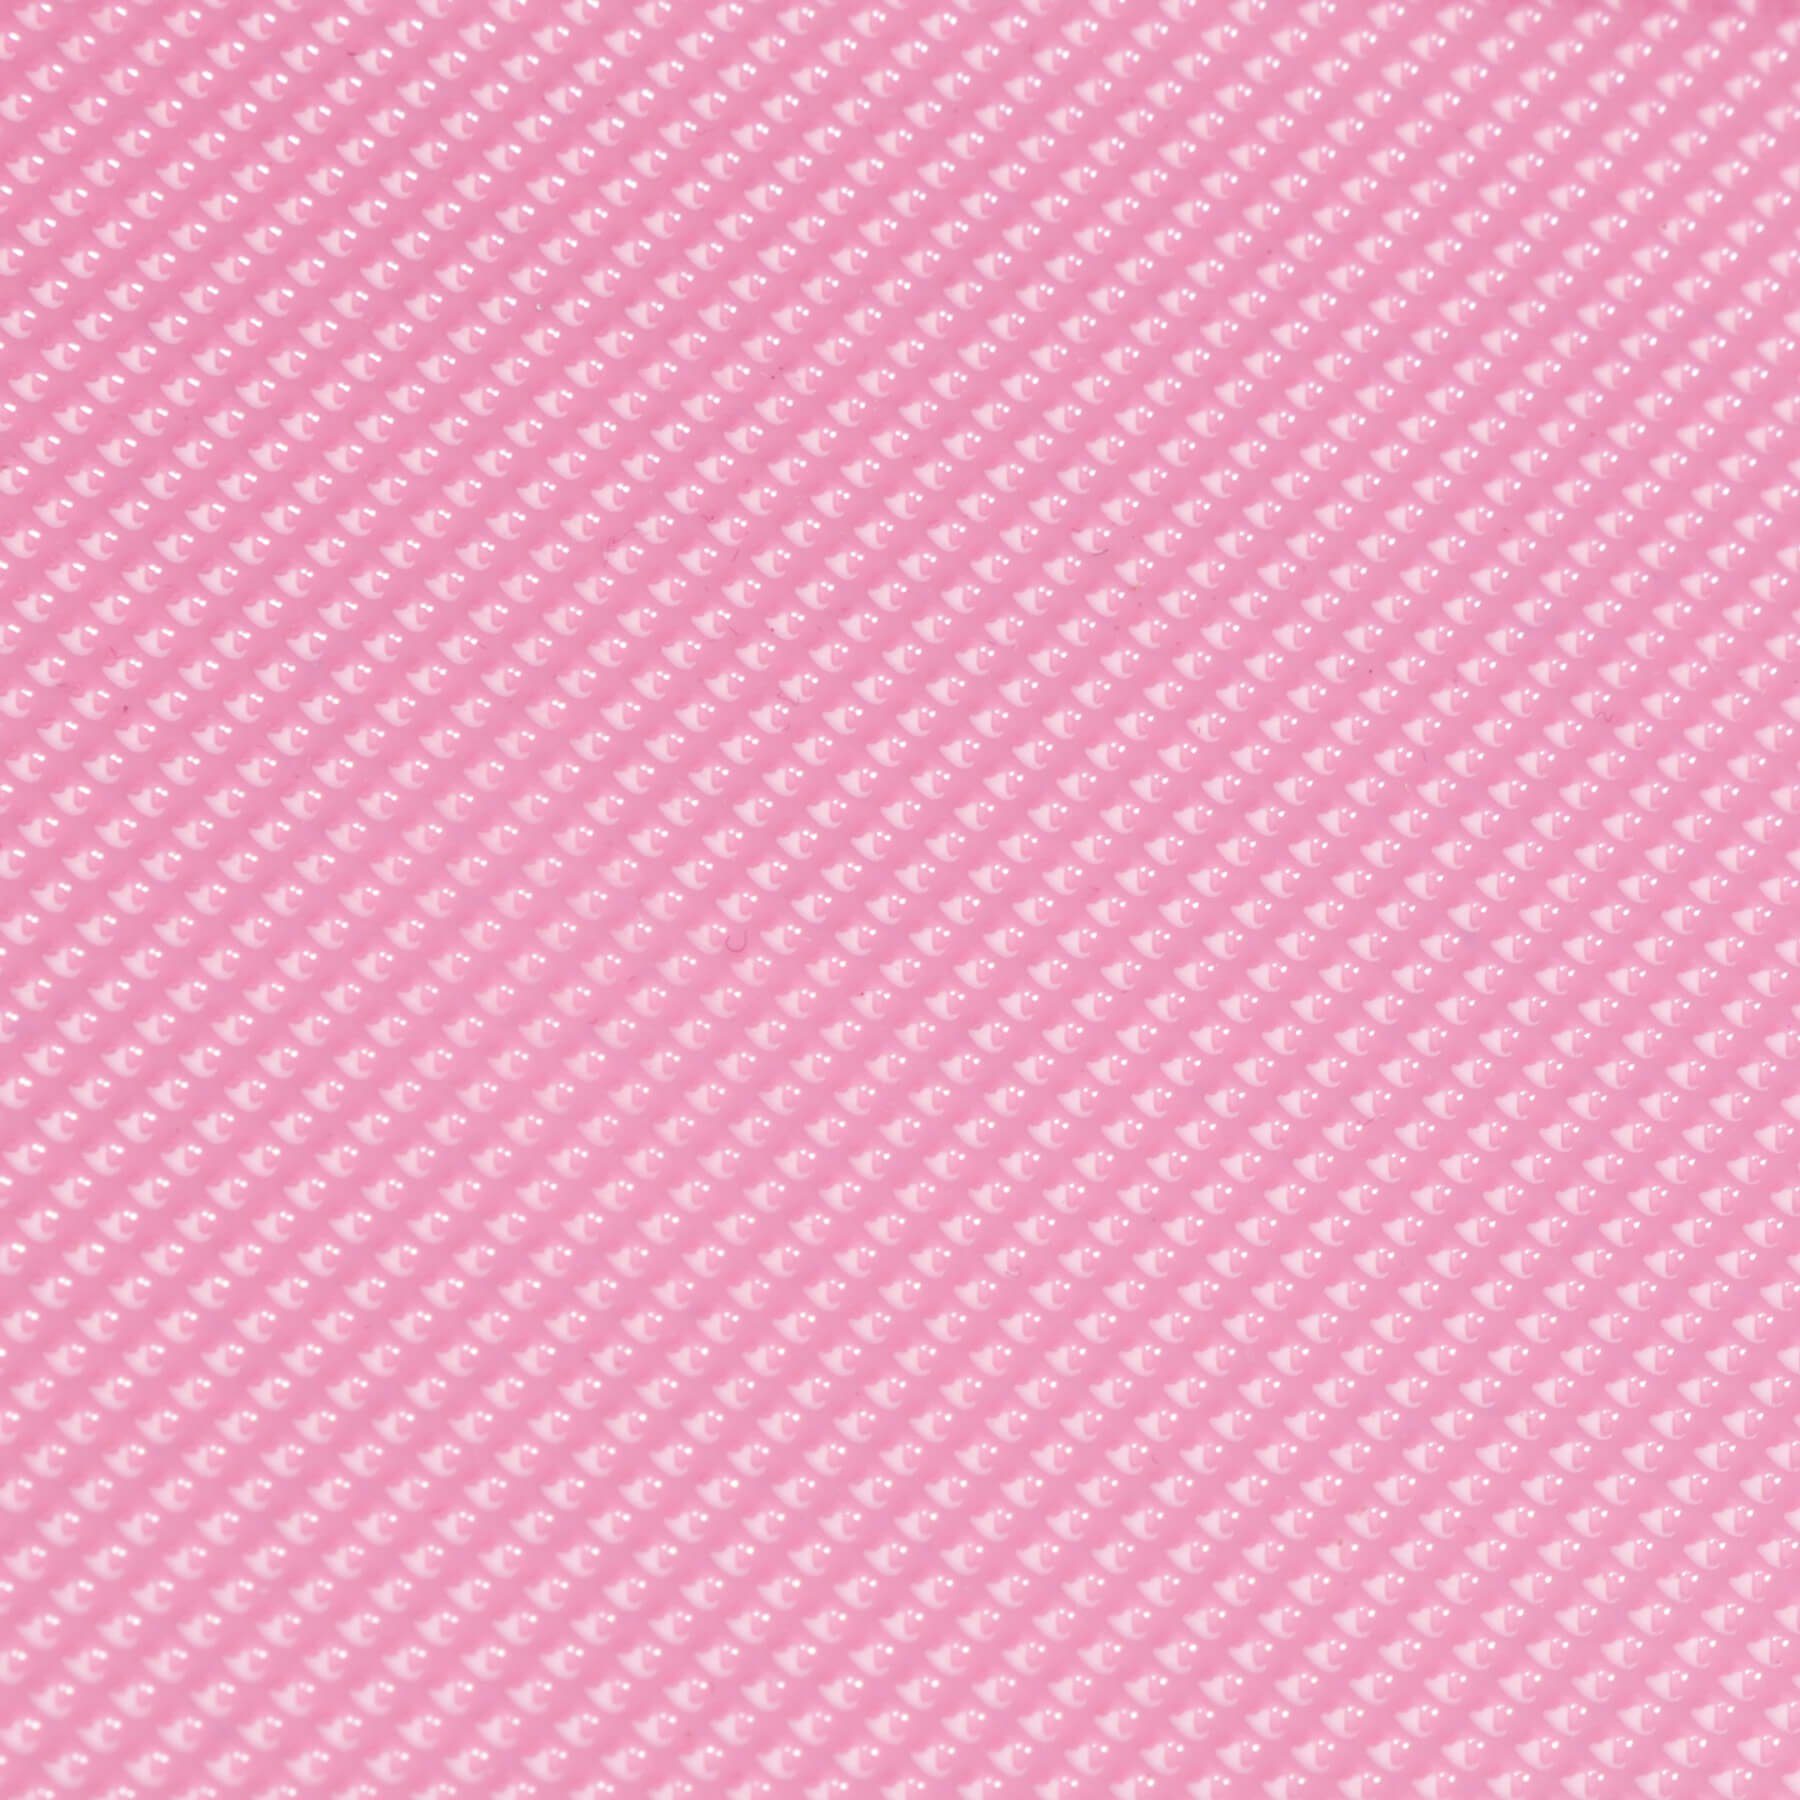 pink Kosmetiktrolley 2 Rollen, mit Etagen, tectake 3 erweiterbar Koffer